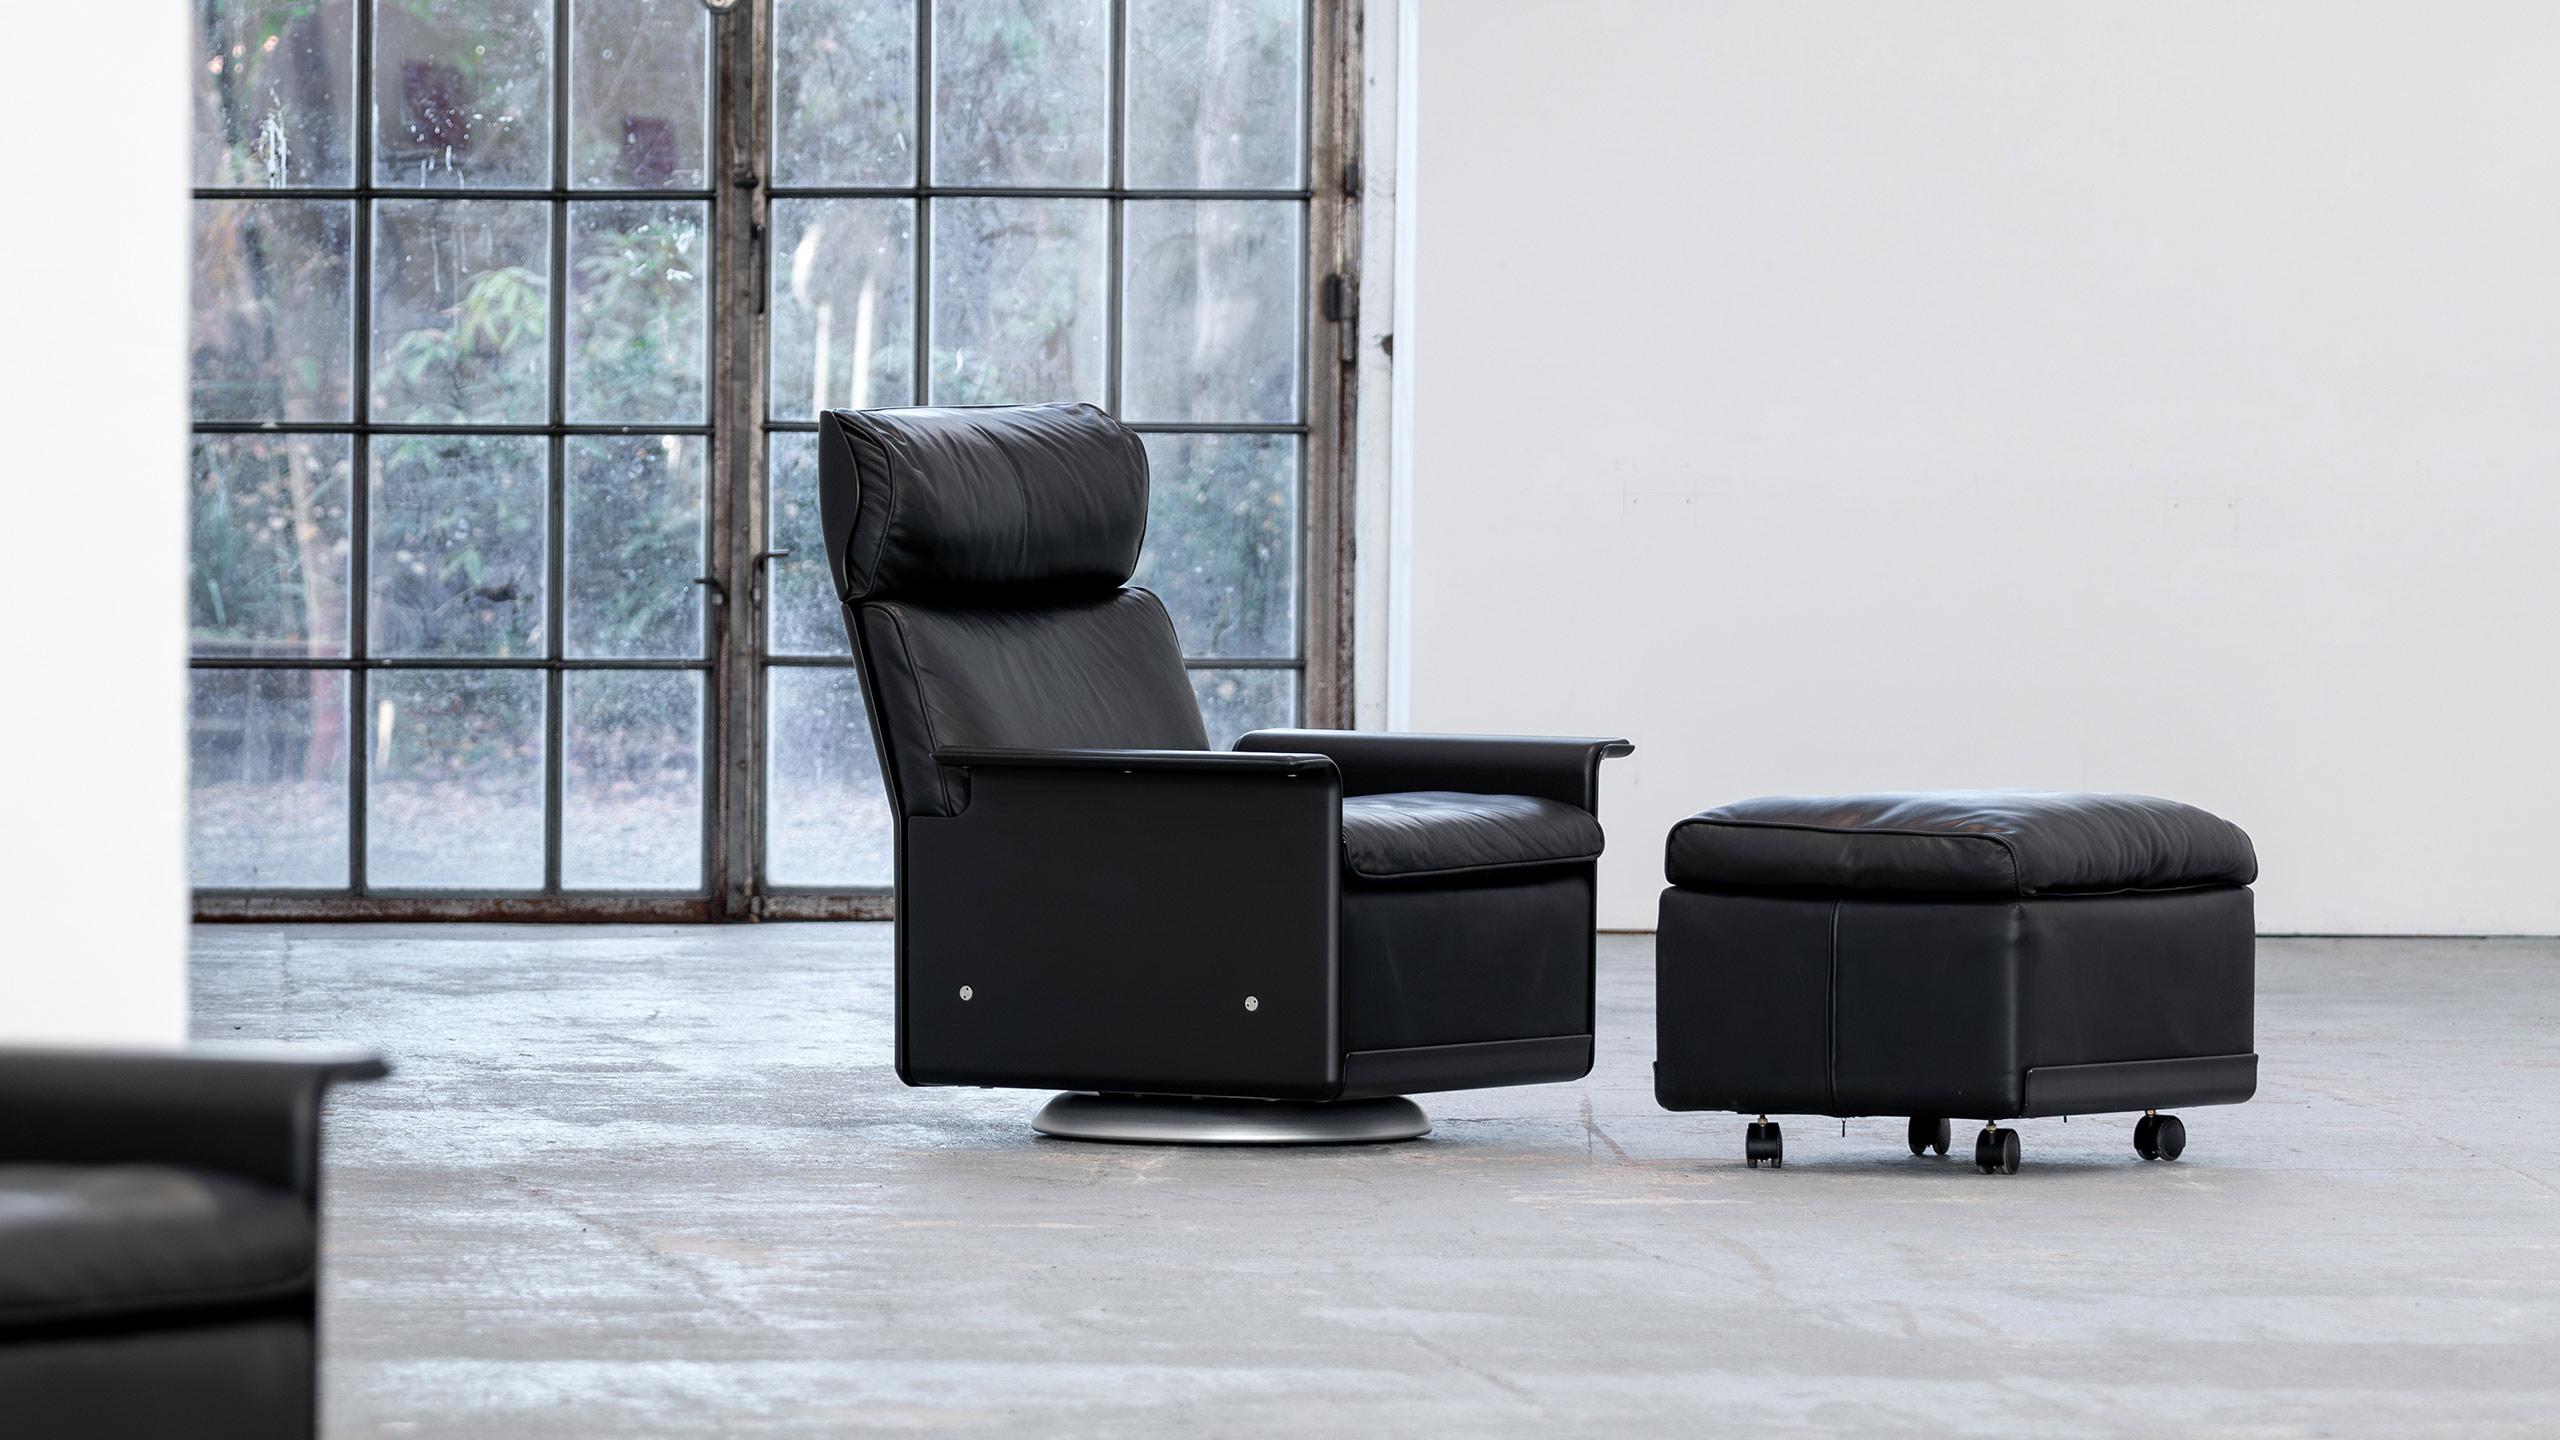 Lounge Chair + Ottoman aus dem Stuhlprogramm 620 - entworfen von Dieter Rams für Vitsoe, Deutschland 1962.
 
Der abgebildete Lounge Chair und sein Ottoman wurden um das Jahr 2000 gekauft und befanden sich seitdem im Zweitwohnsitz und wurden daher